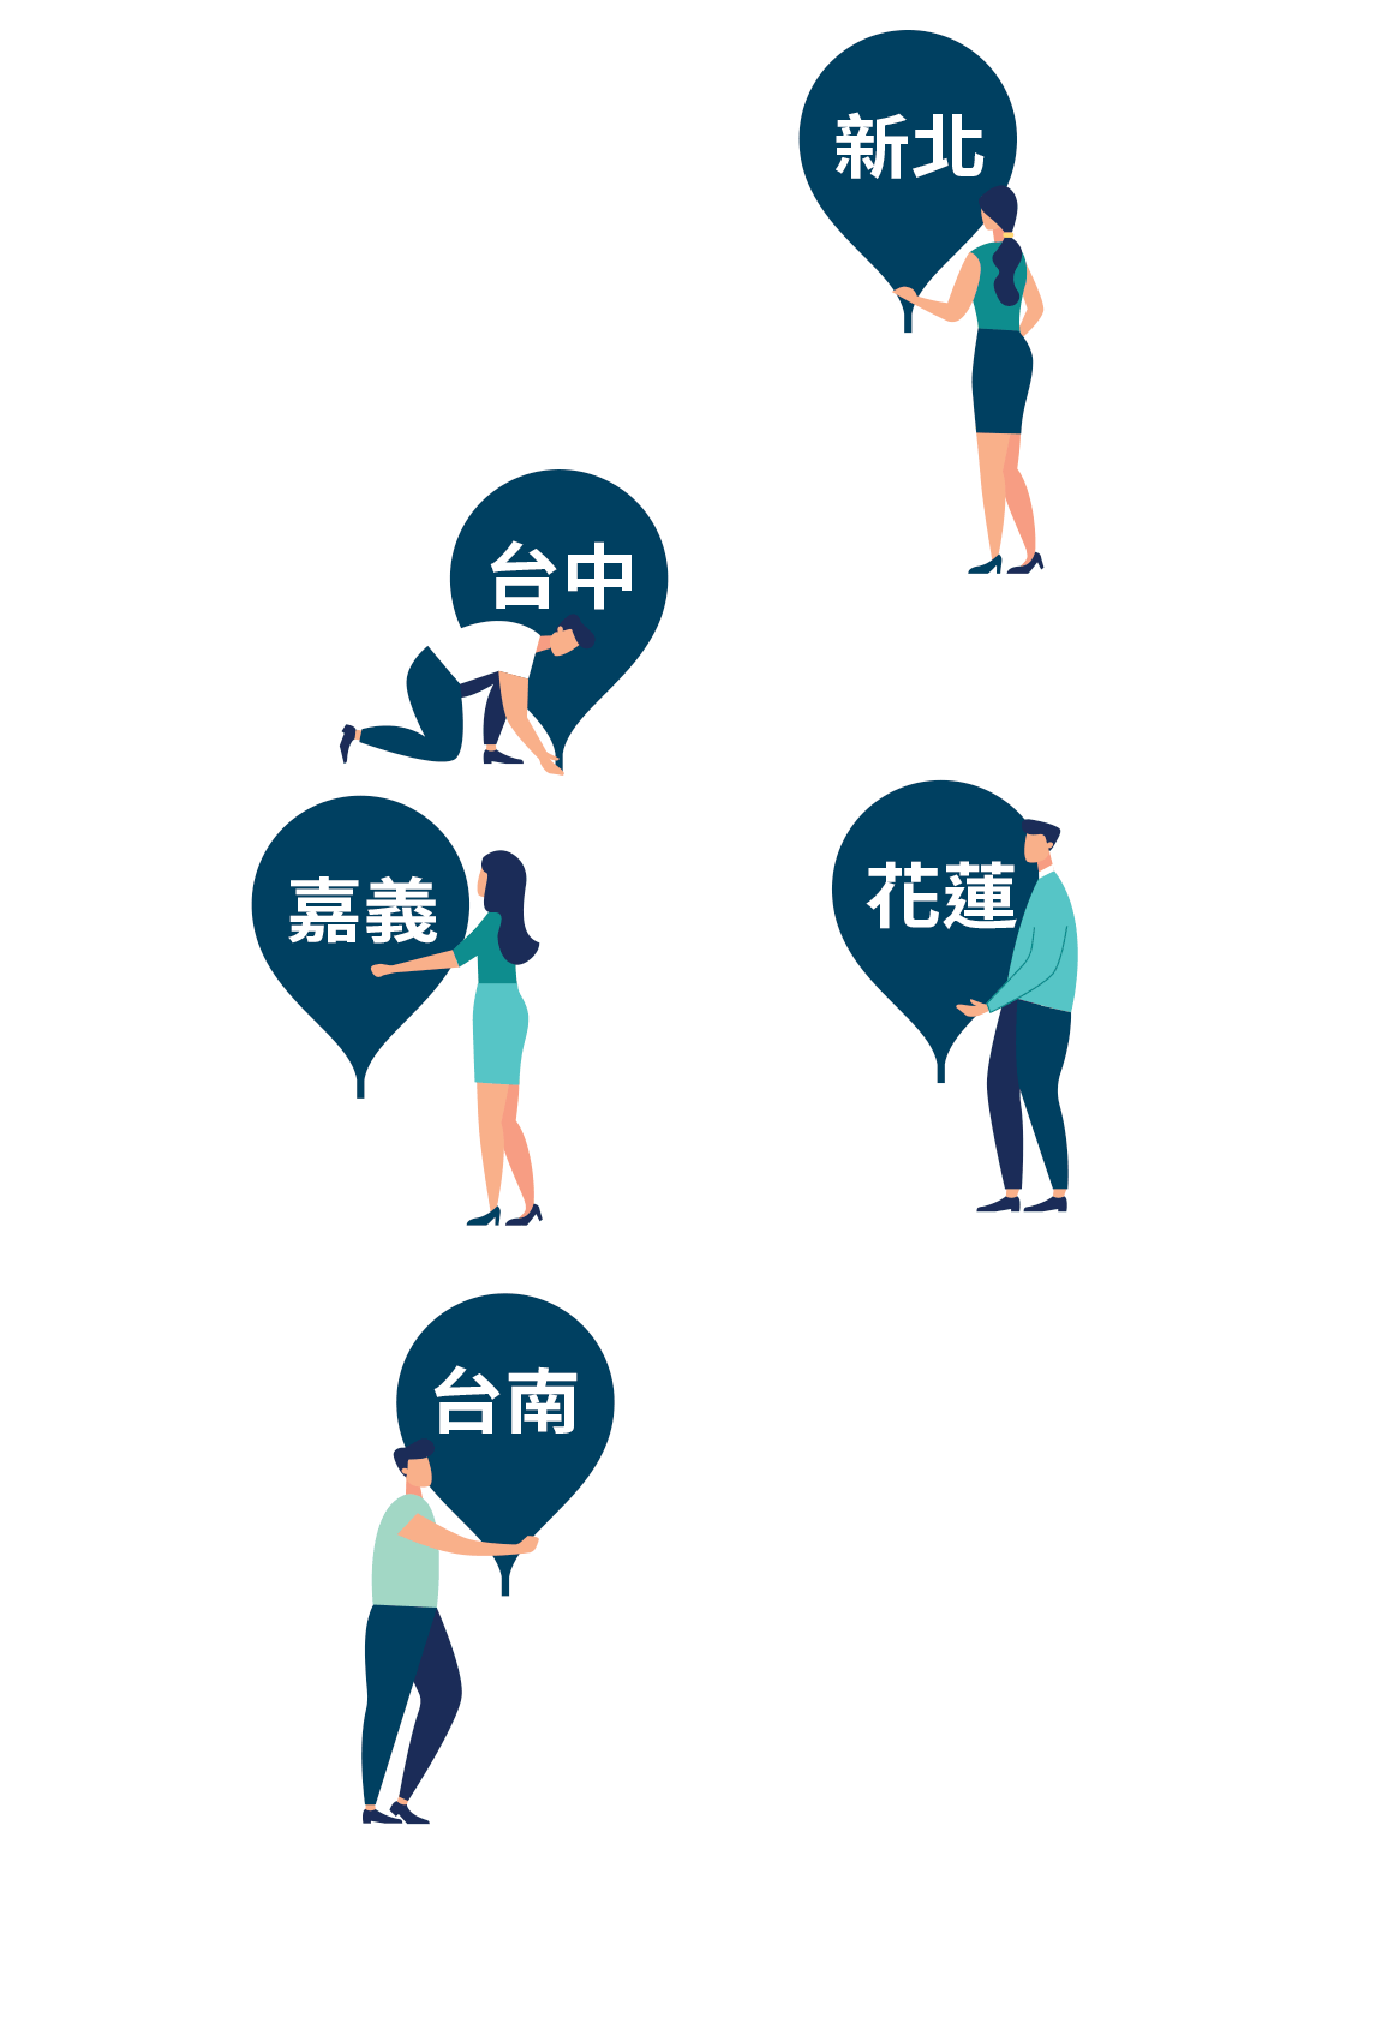 2019年創育中心地圖，包含新北、台中、嘉義、台南、花蓮